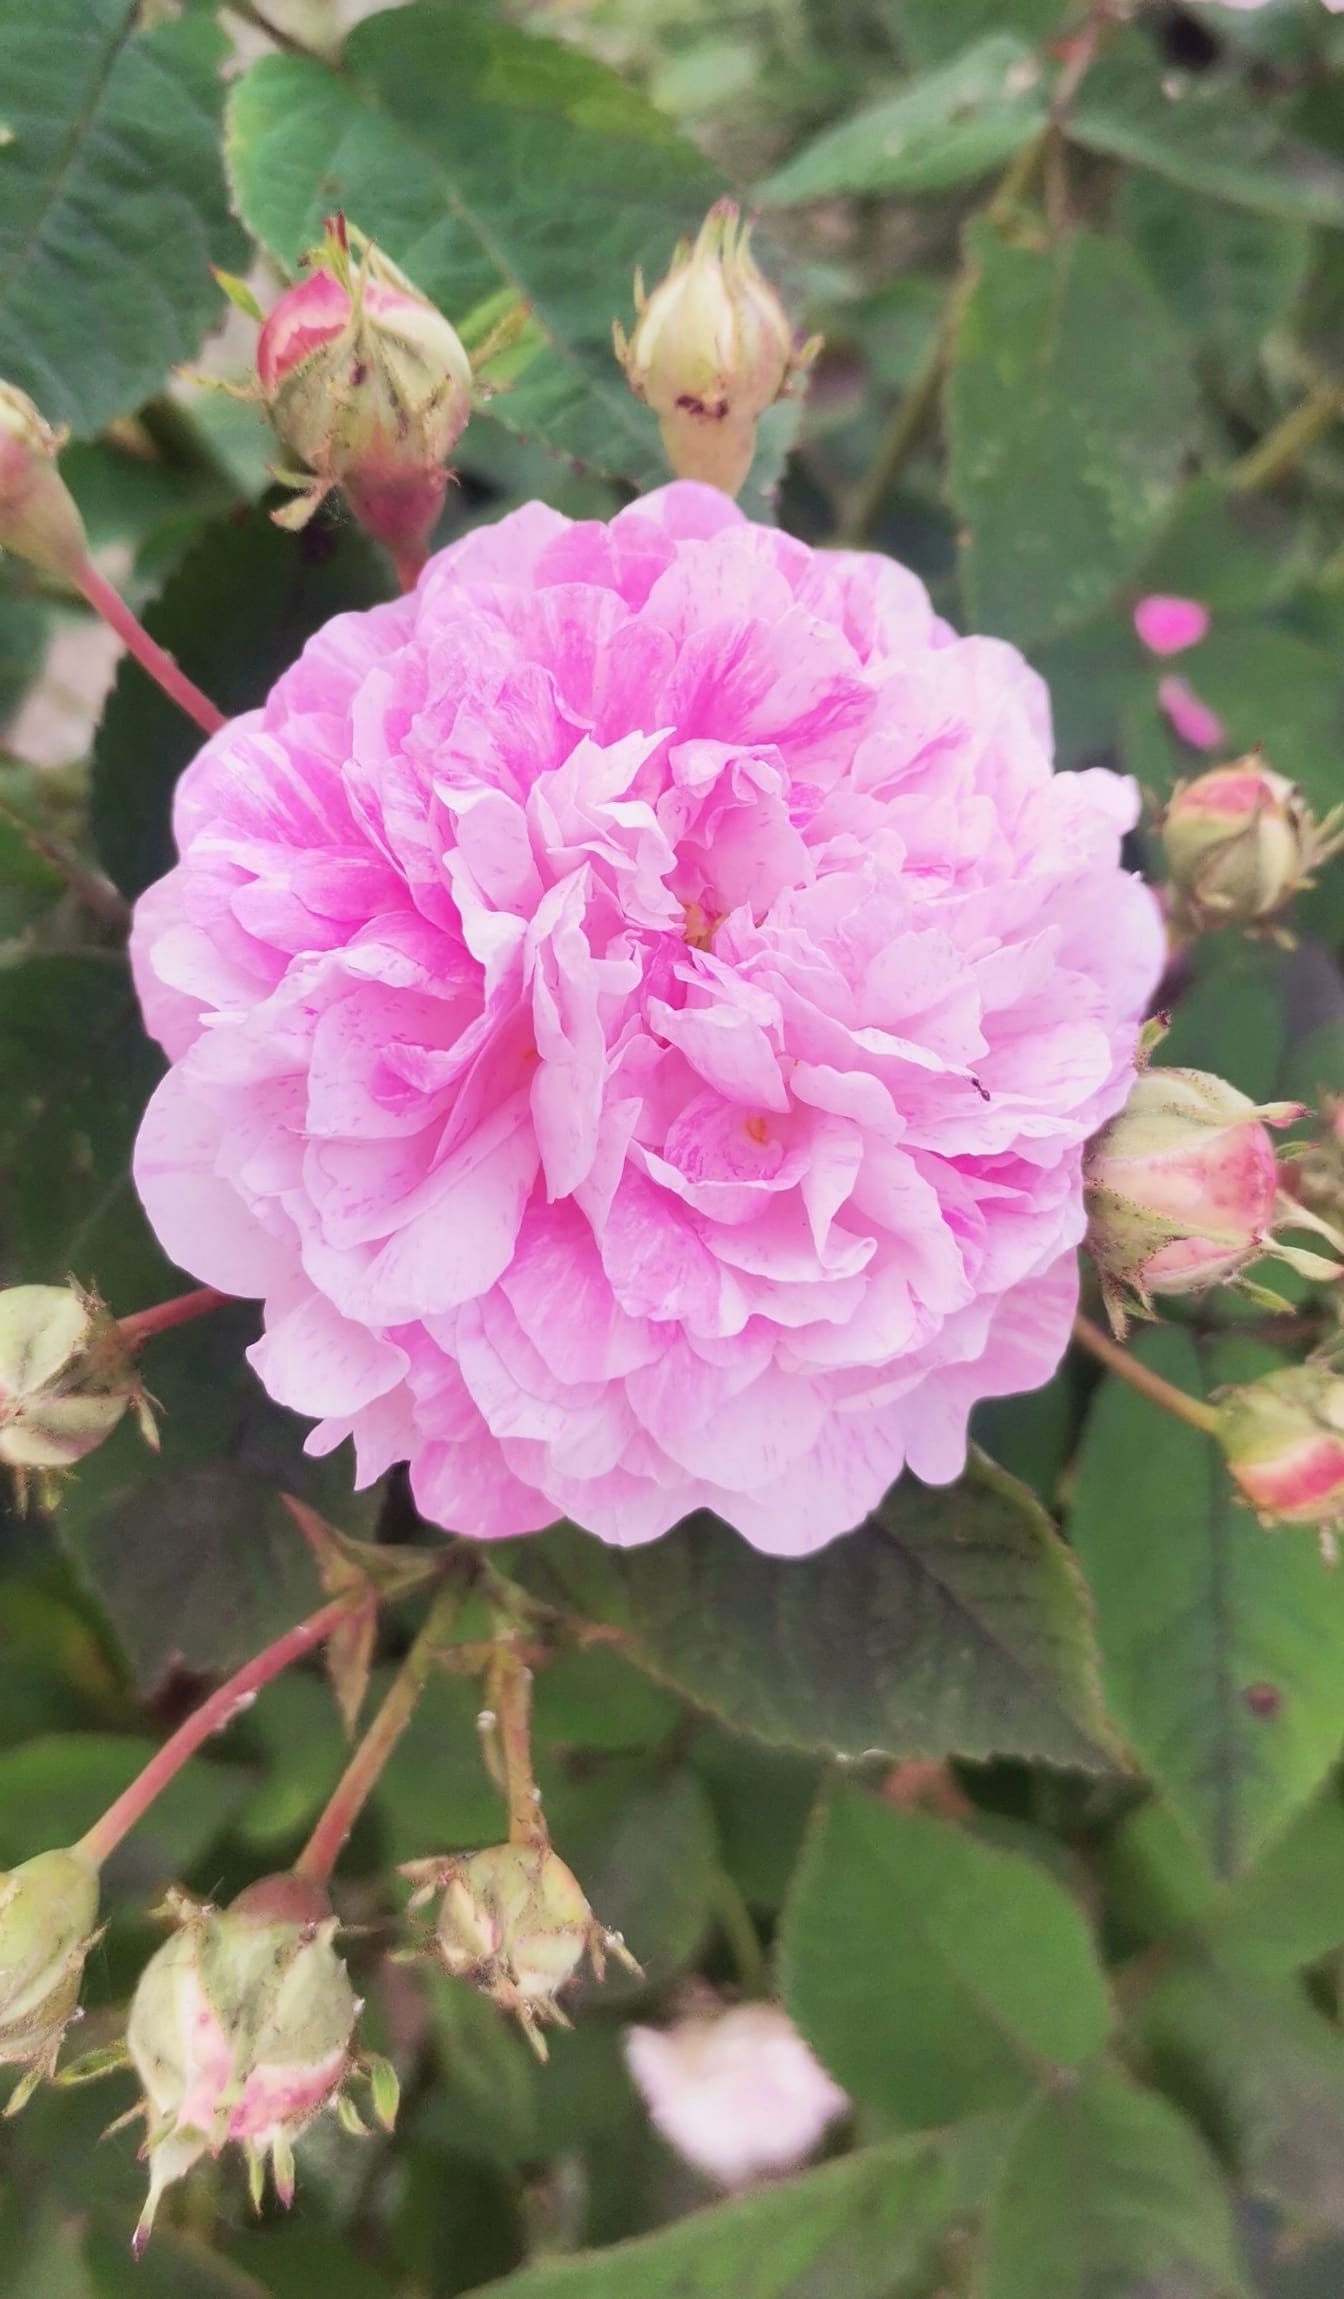 Bunga mawar Damask dengan kelopak merah muda cerah close-up